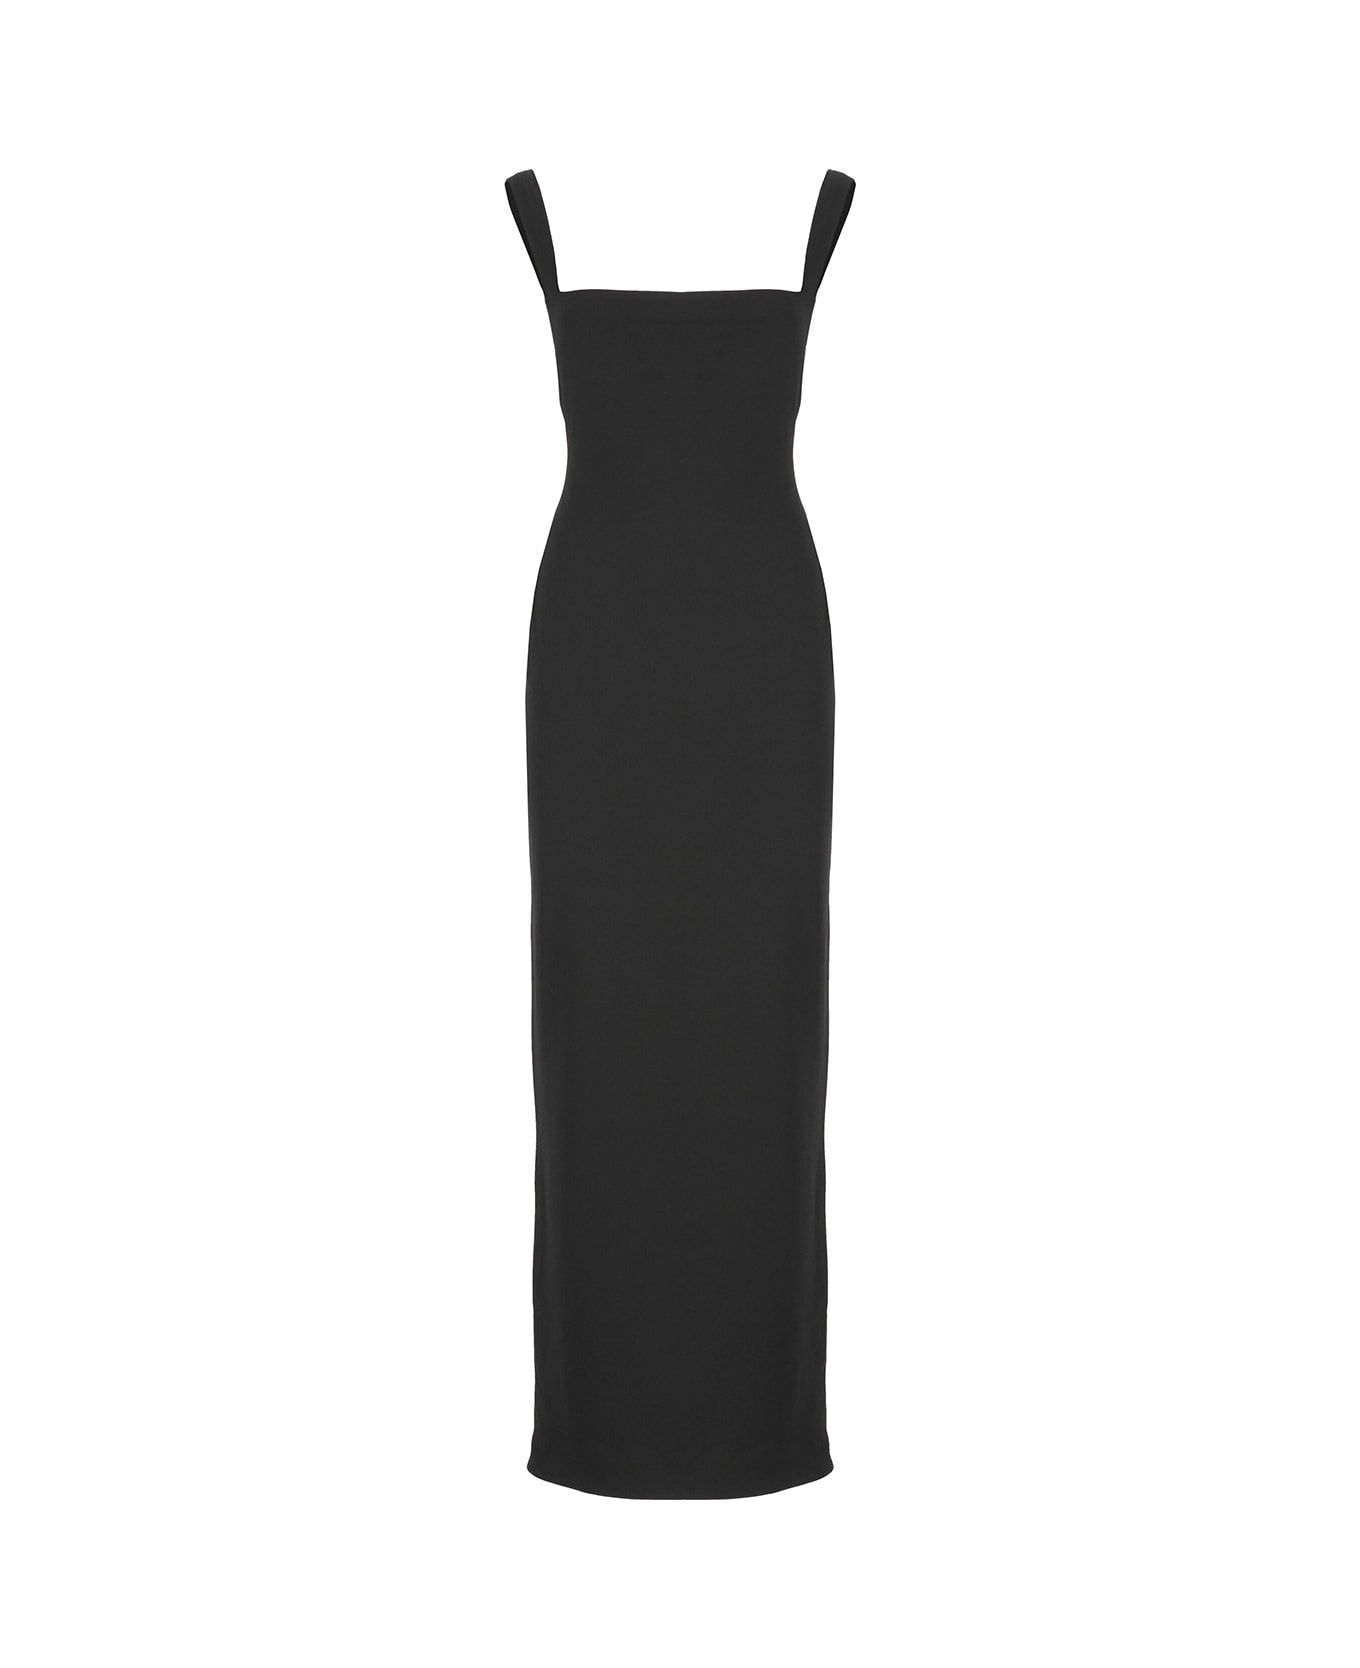 Solace London Joni Maxi Dress - Black